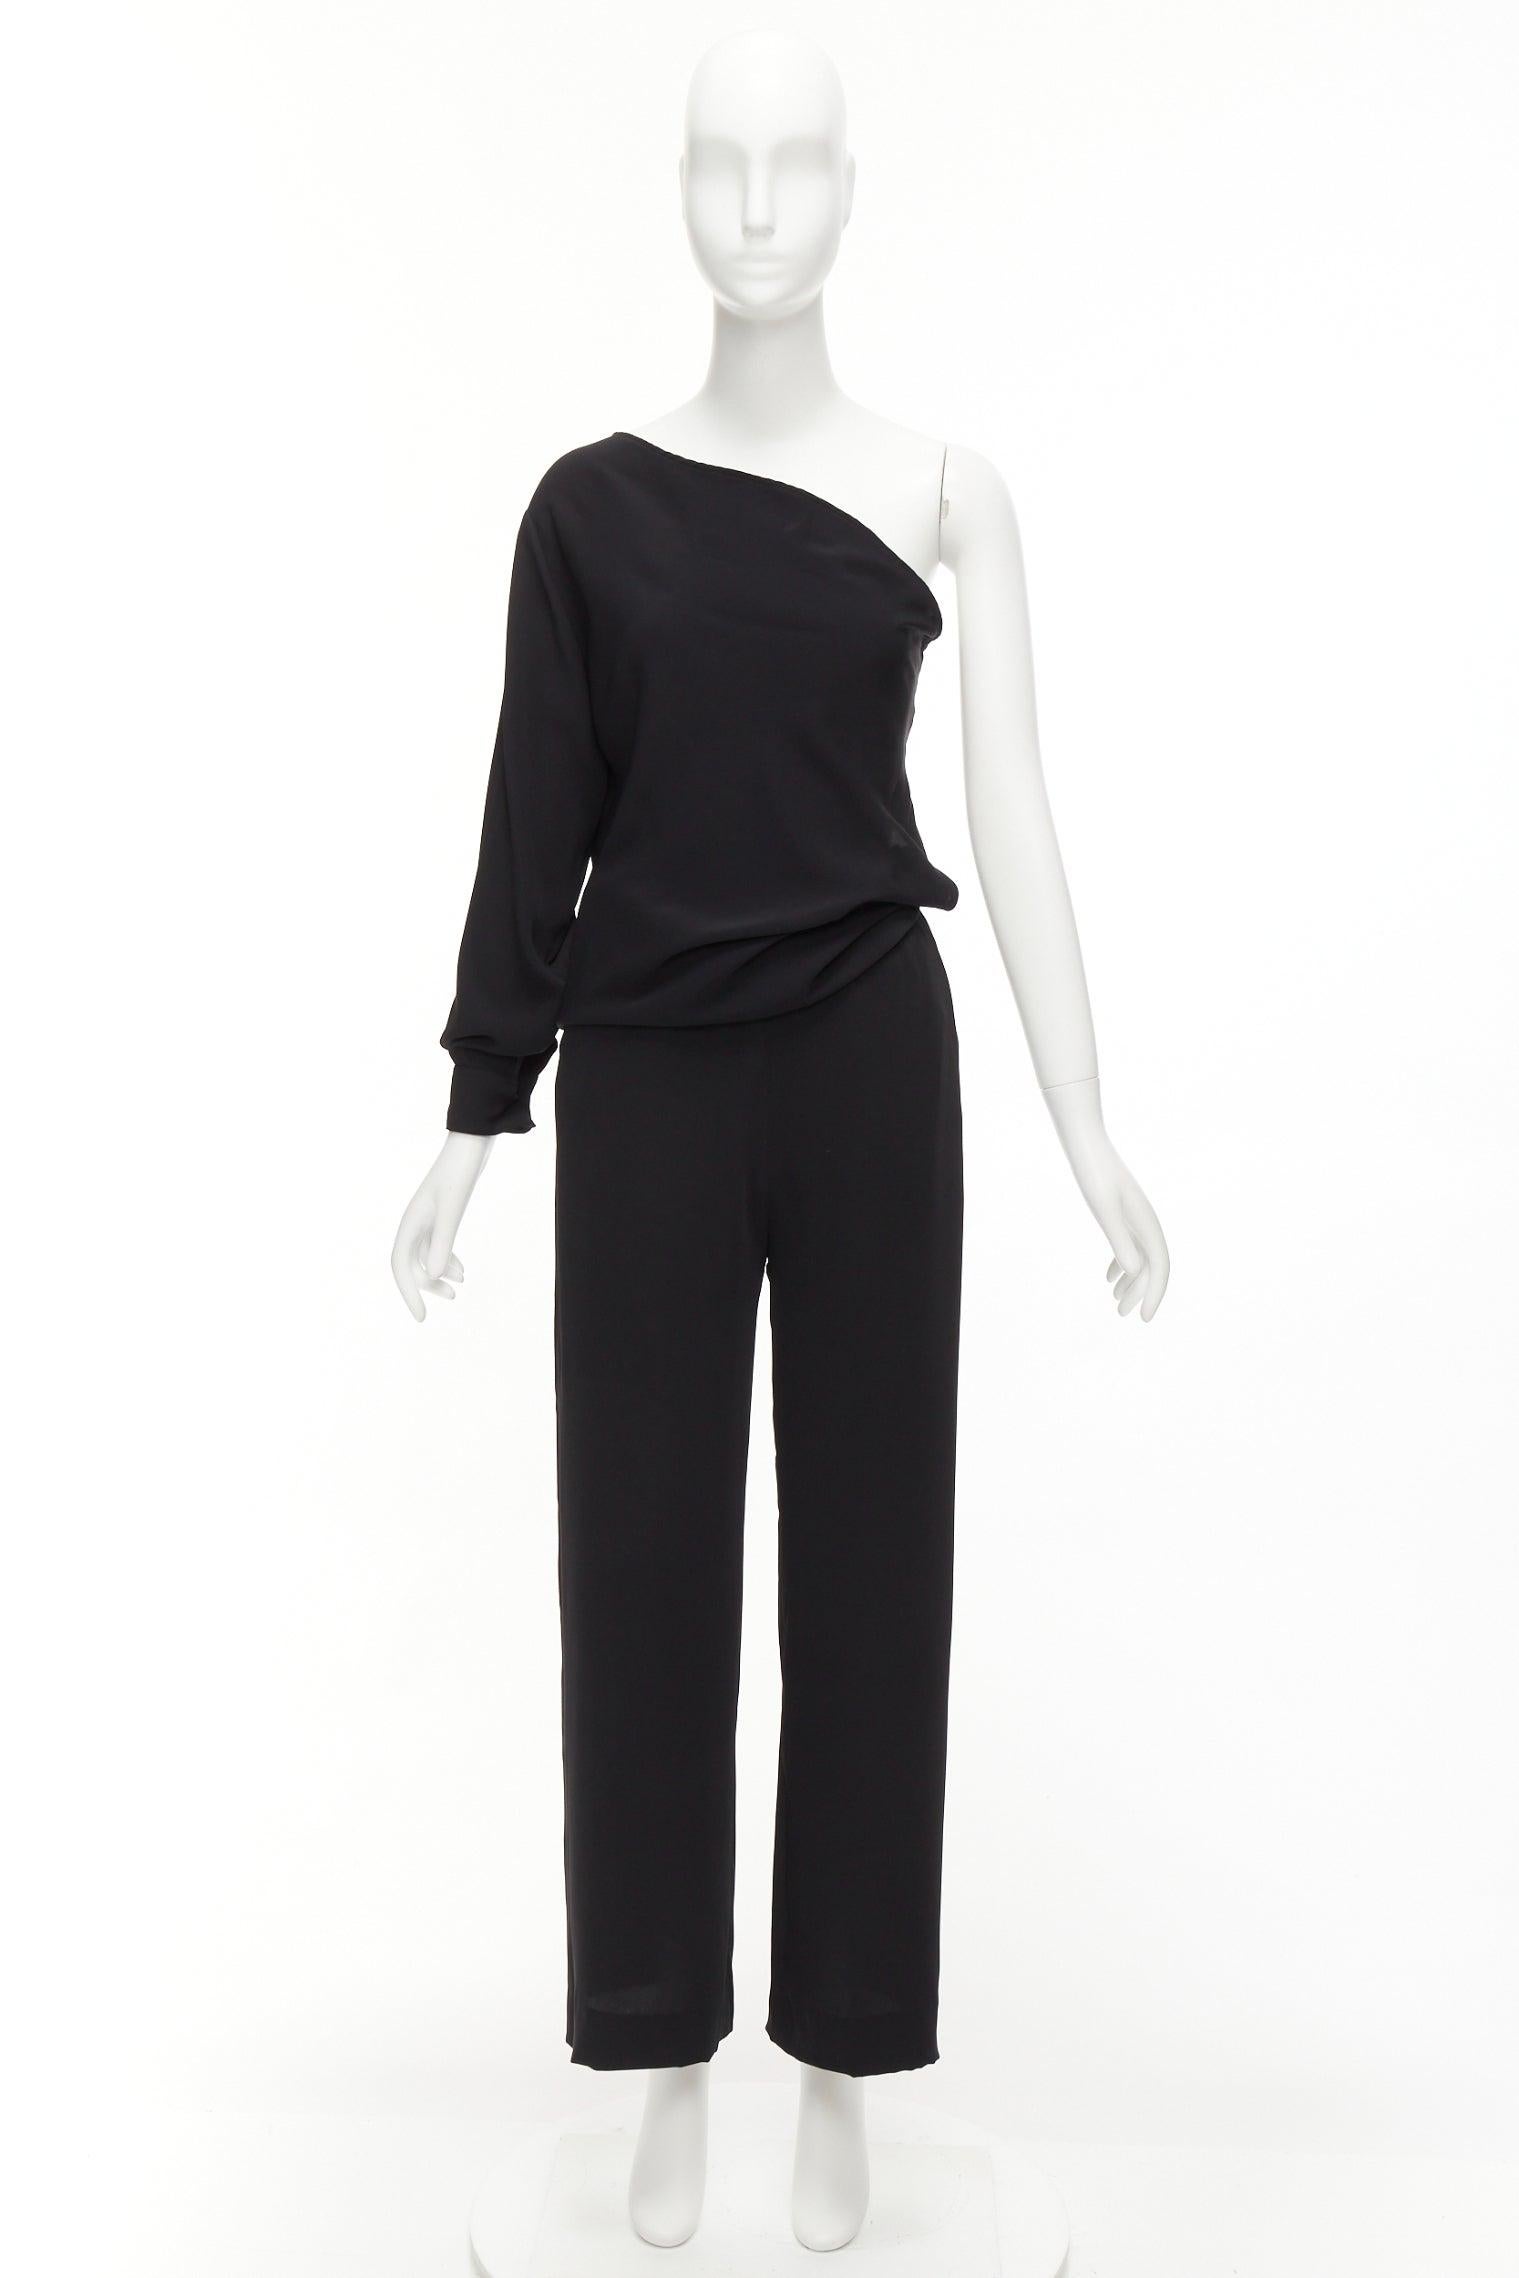 MAISON MARGIELA MM6 black one shoulder drape cut cropped jumpsuit FR36 S For Sale 5